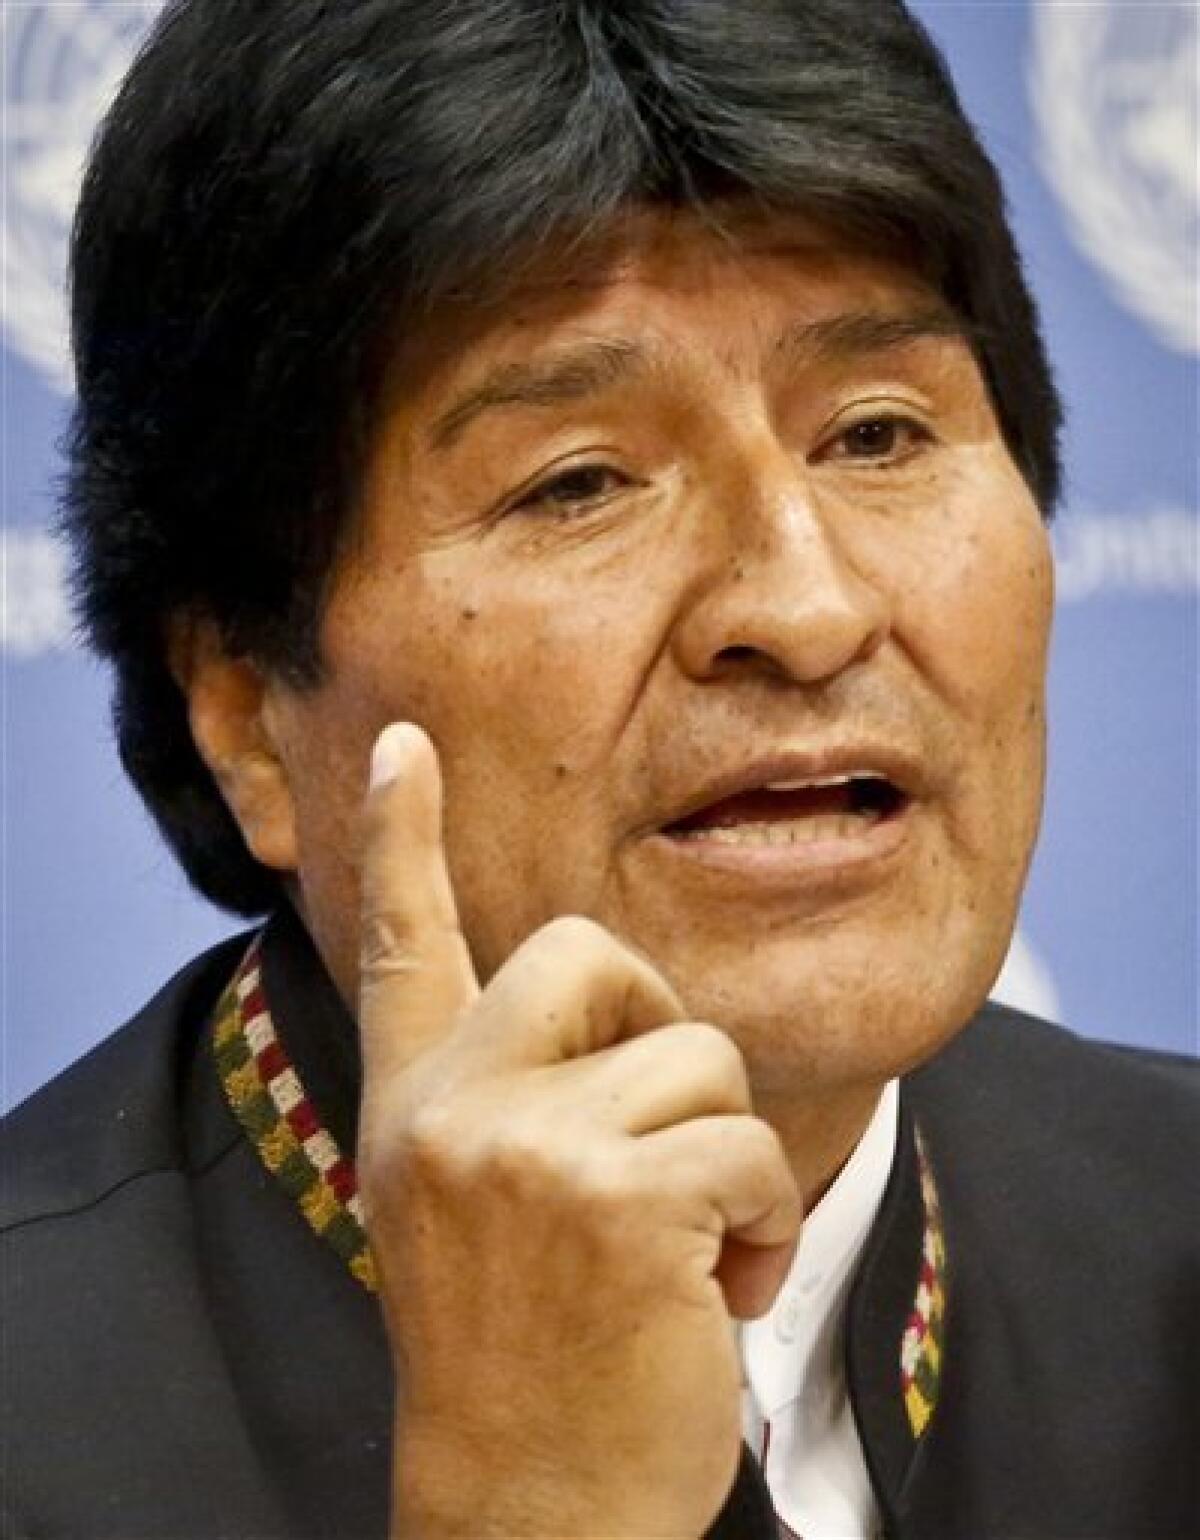 El presidente de Bolivia Evo Morales ofrece una conferencia de prensa en la sede de las Naciones Unidas el 22 de septiembre del 2016. Morales negó que piense buscar un nuevo mandato.